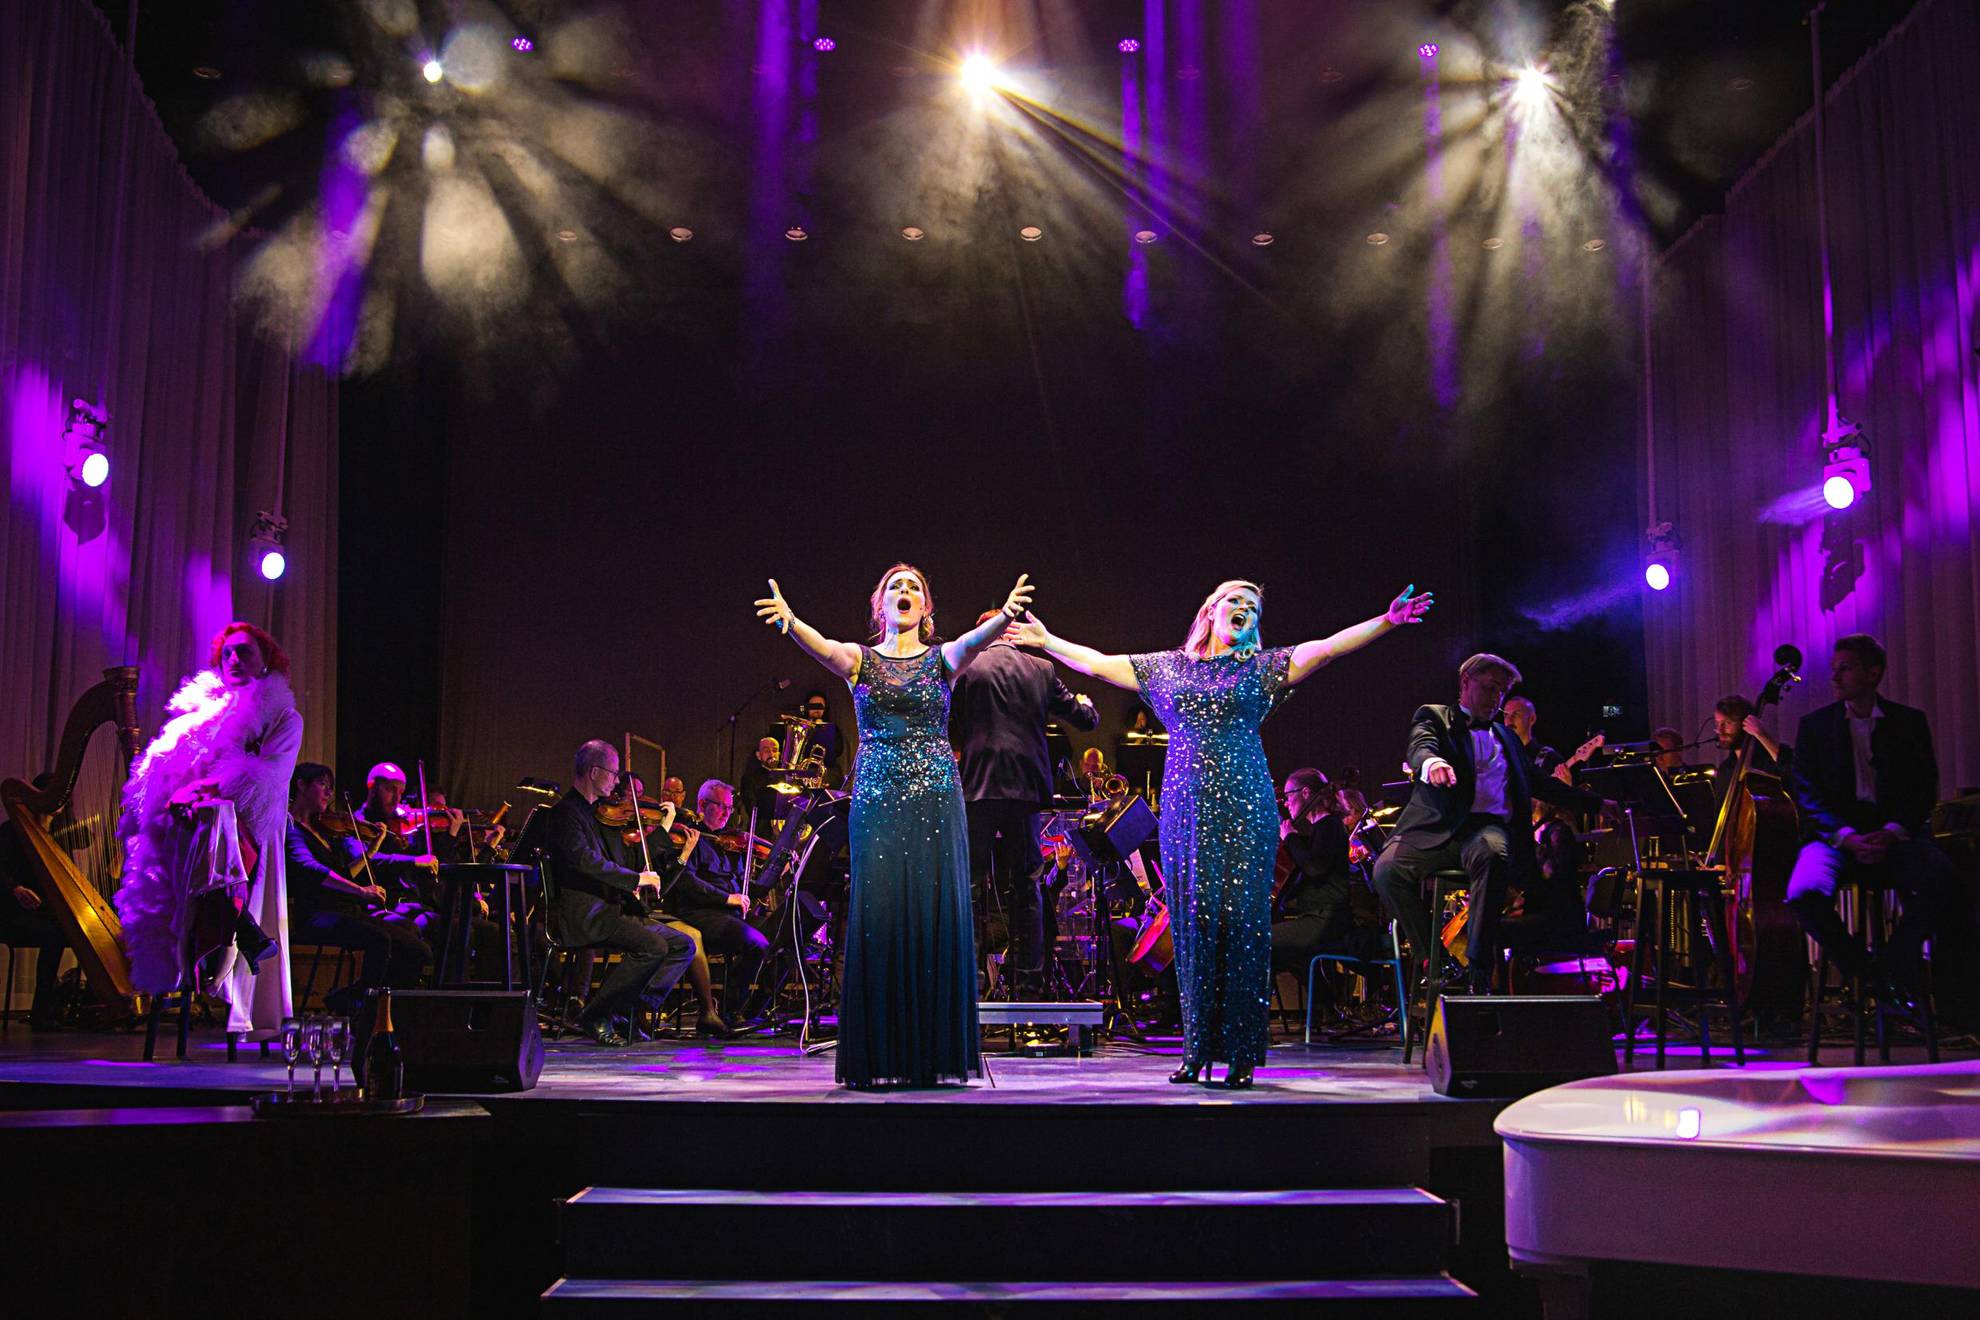 Zwei Frauen in blauen Glitzerkleidern singen während einer Aufführung auf einer Bühne. Dahinter sitzt ein Orchester.